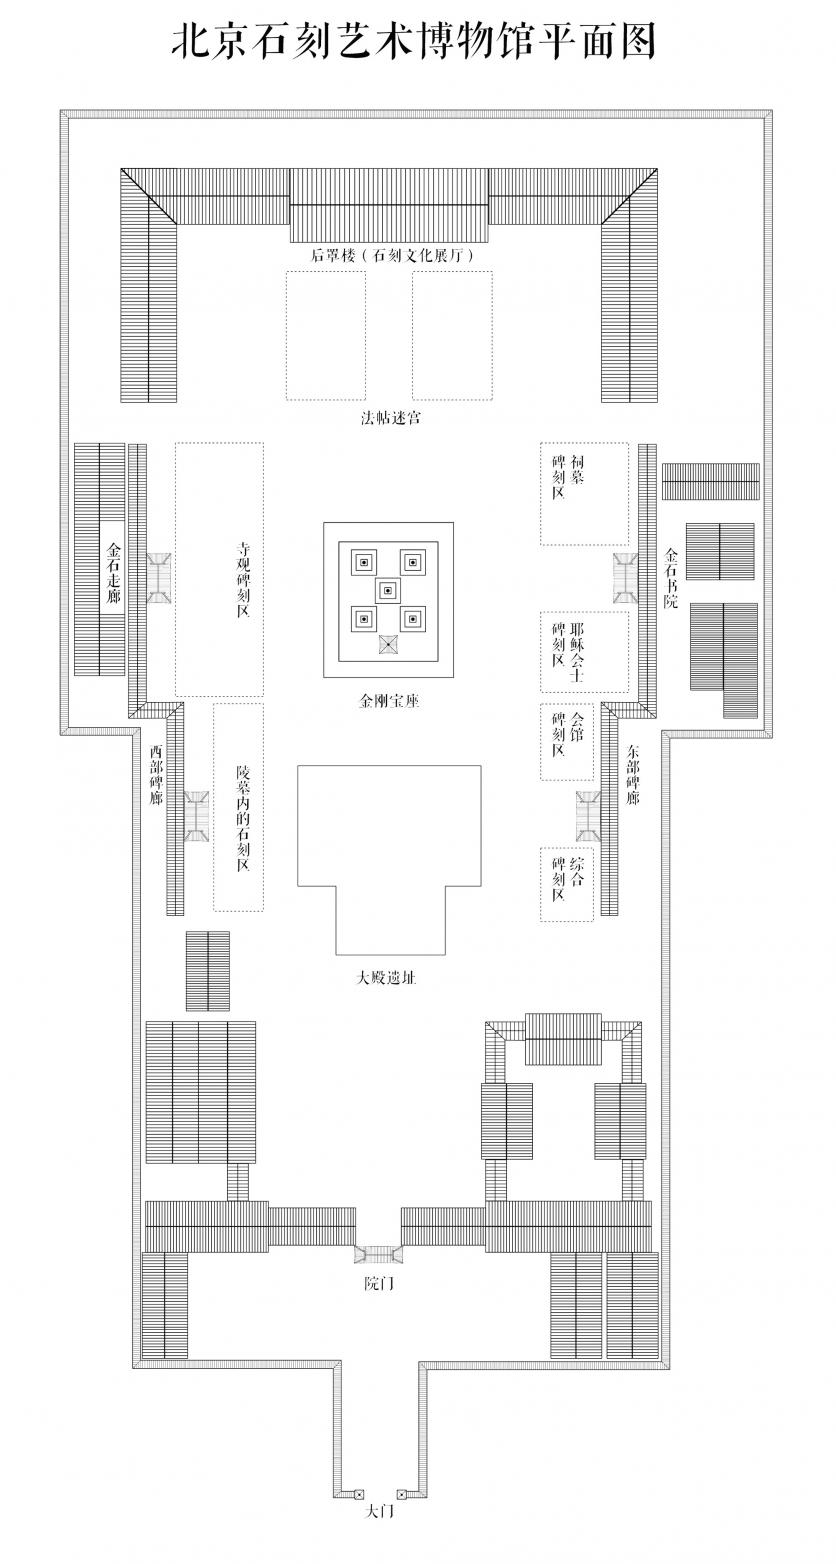 2024北京石刻艺术博物馆游玩攻略 - 门票价格 - 开放时间 - 简介 - 地址 - 交通 - 天气